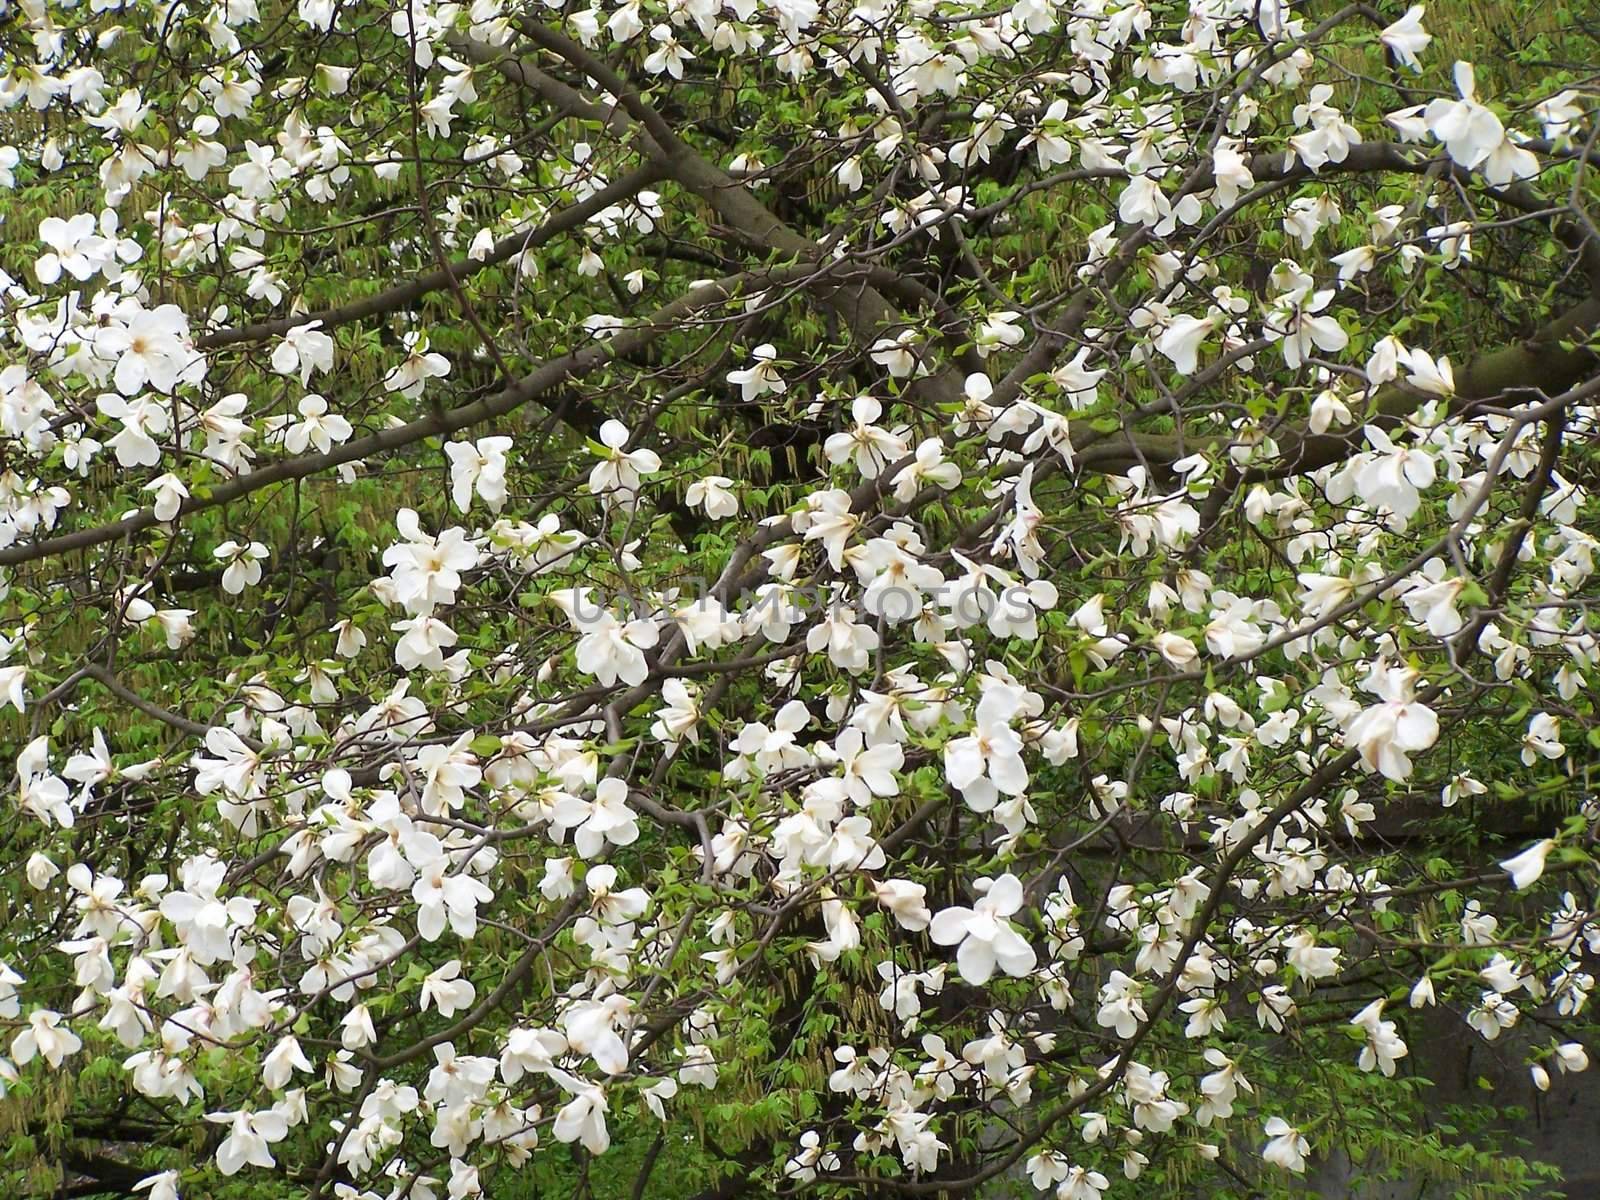 White magnolia blossoms by Lessadar